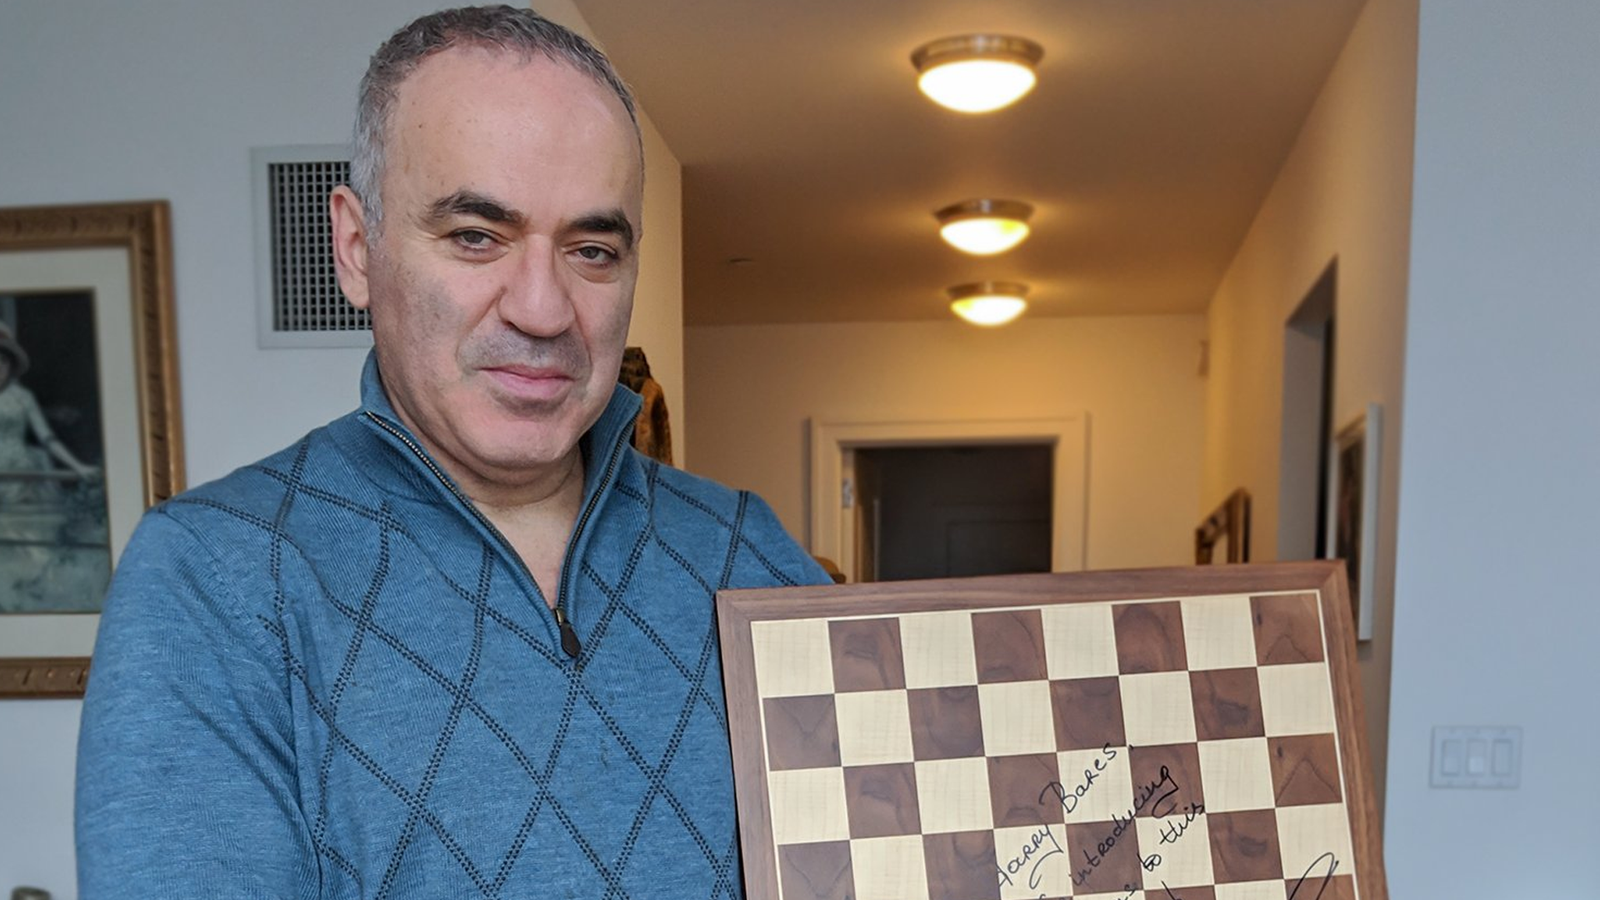 Queen's Gambit Garry Kasparov interview: The former world chess